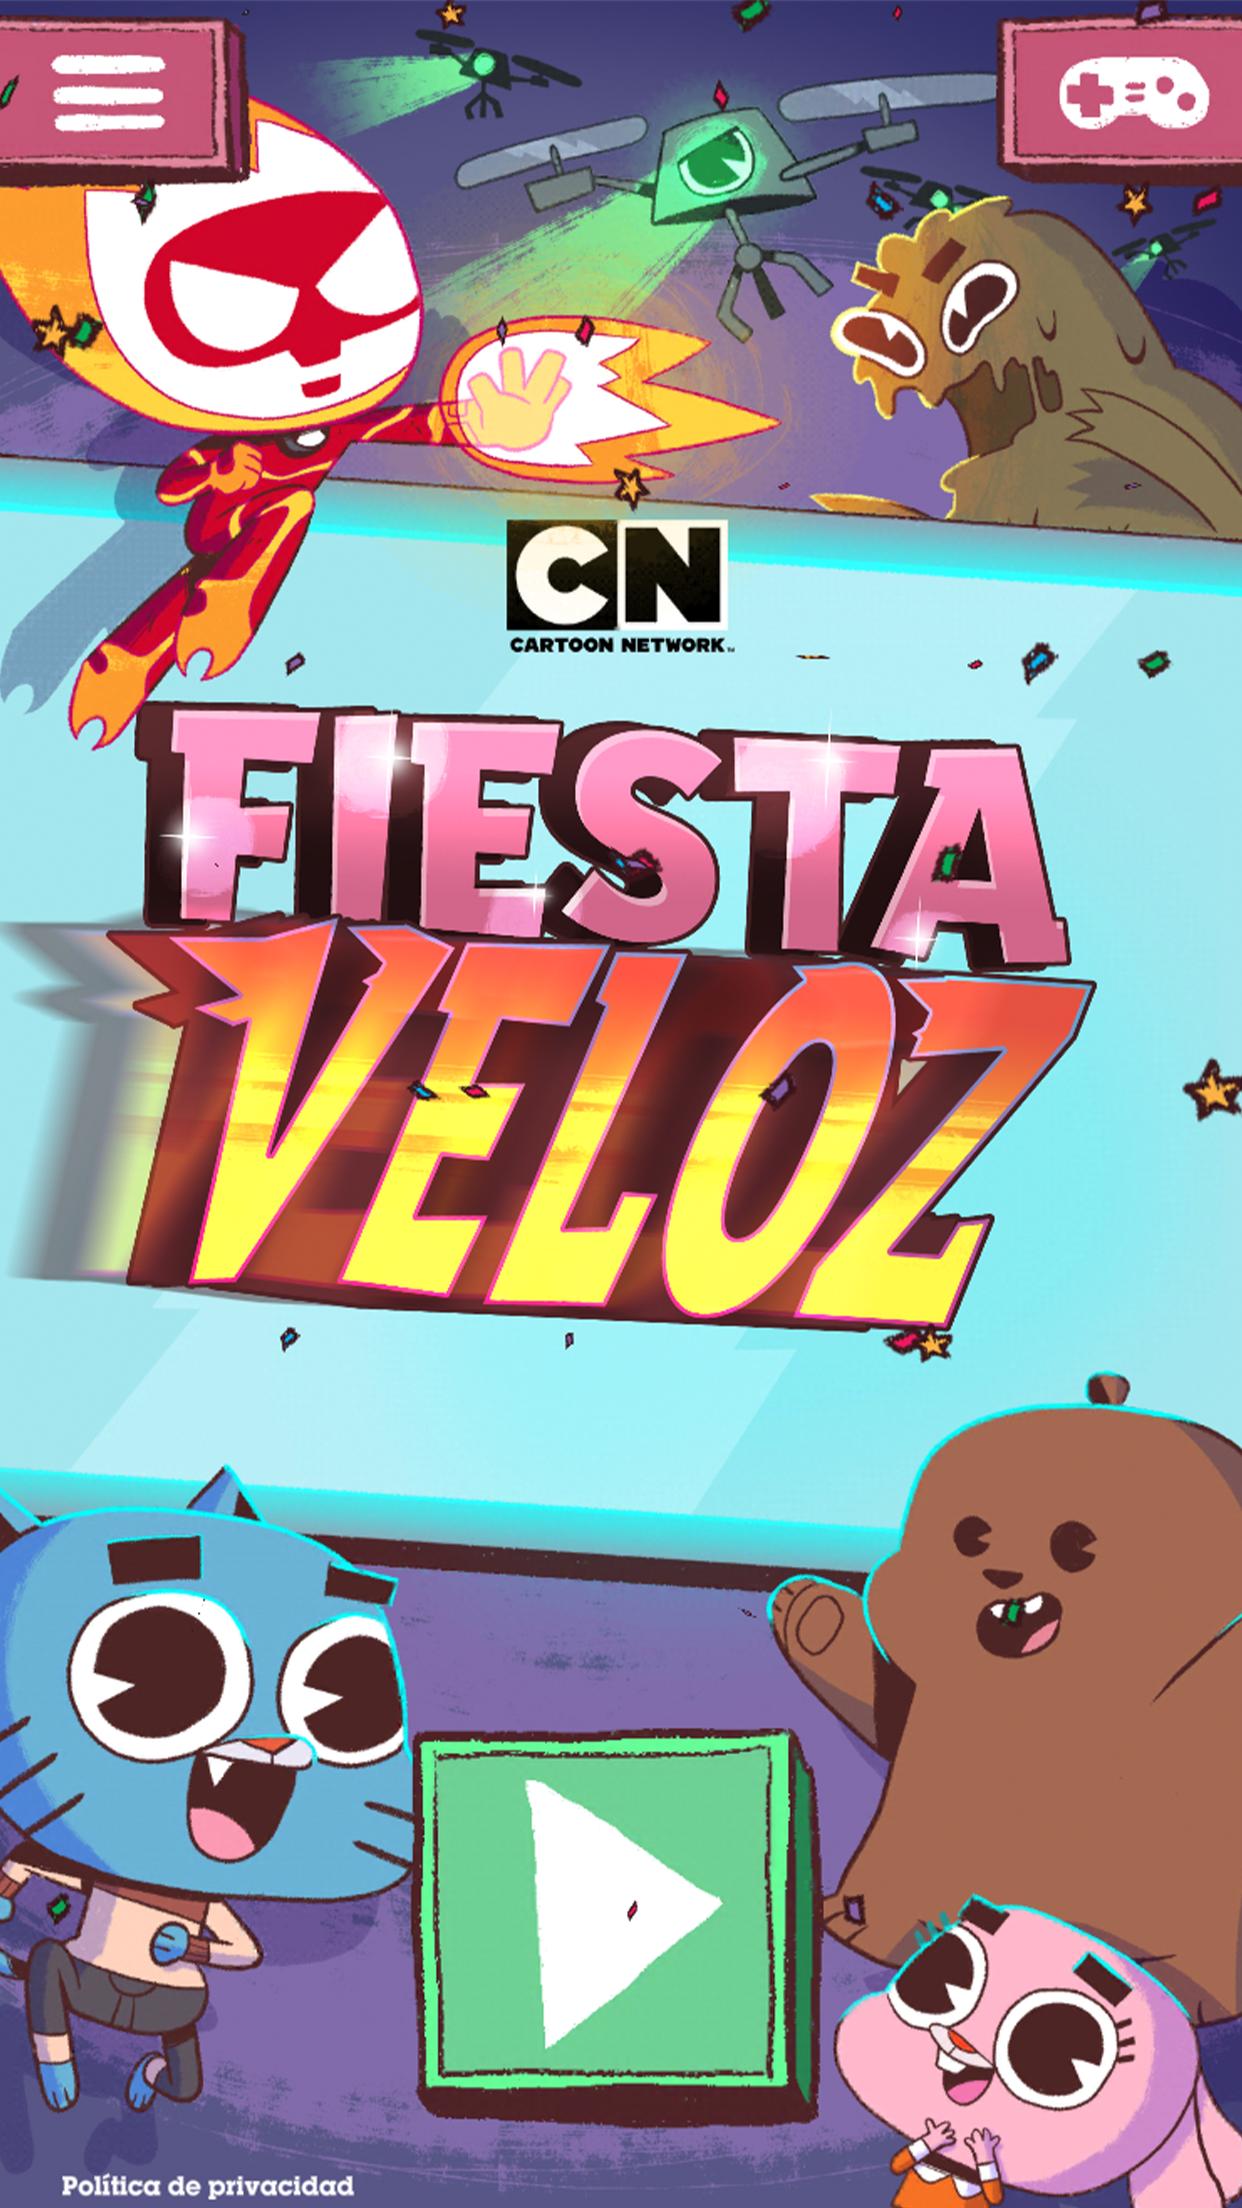 Fiesta Veloz de Cartoon Network: juego arcade for Android - APK Download